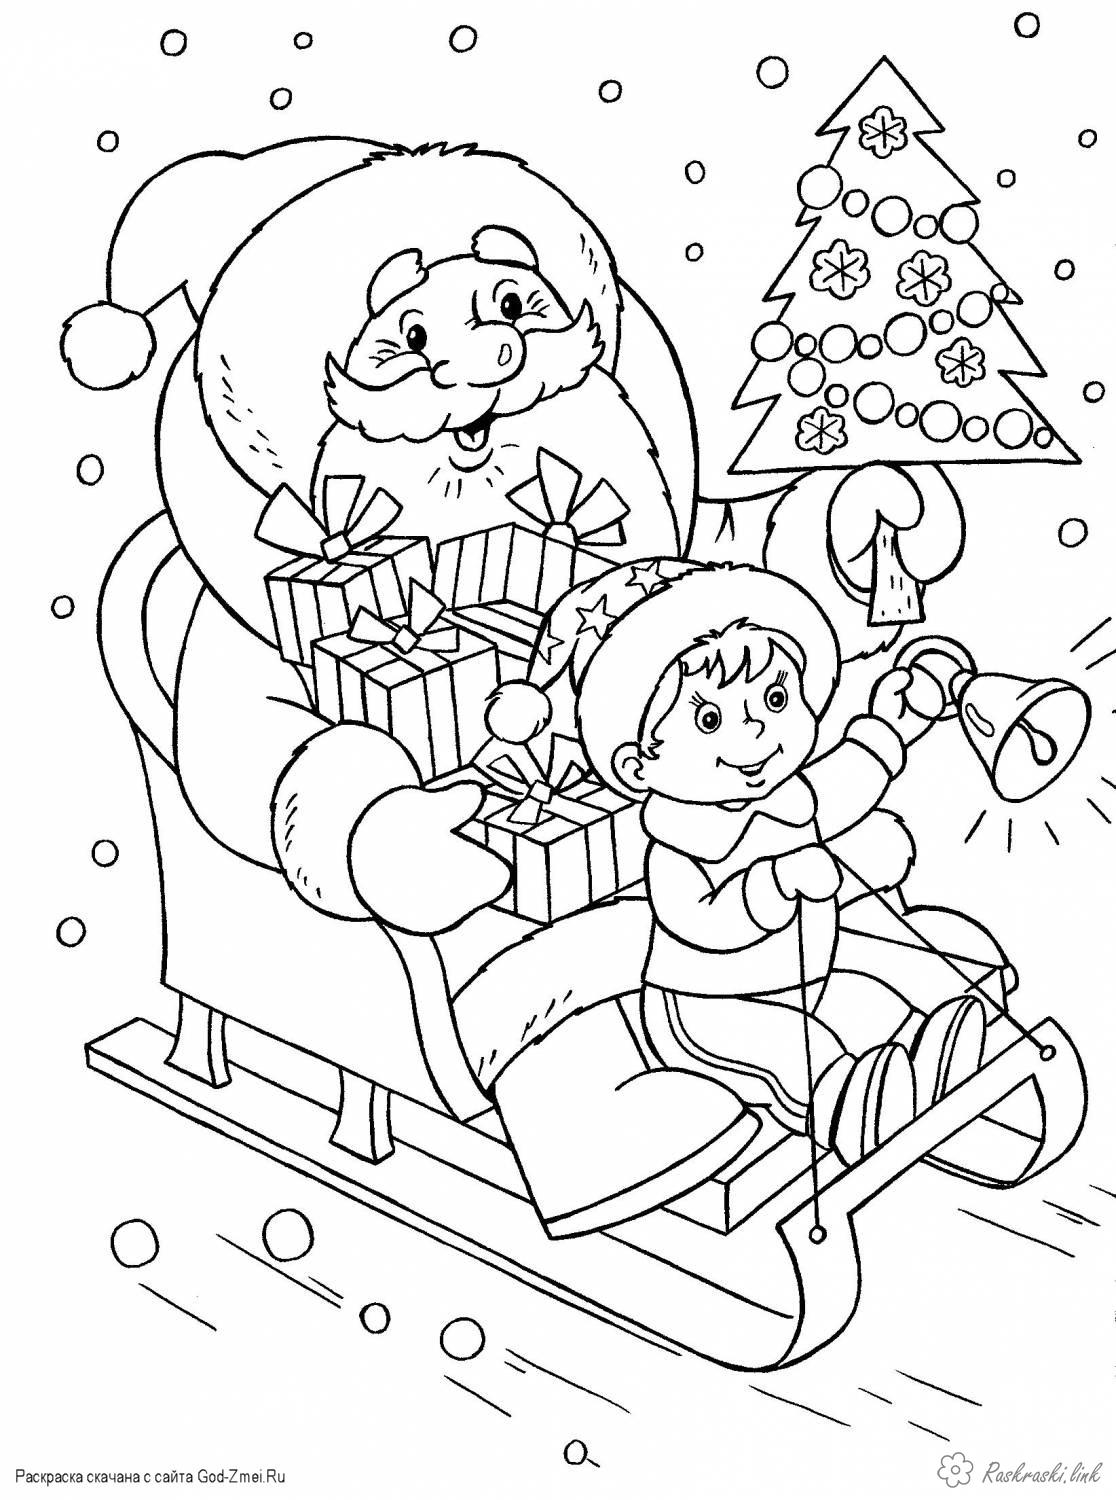 Розмальовки санях Дитяча новорічна розфарбування, дід мороз на санях з подарунками